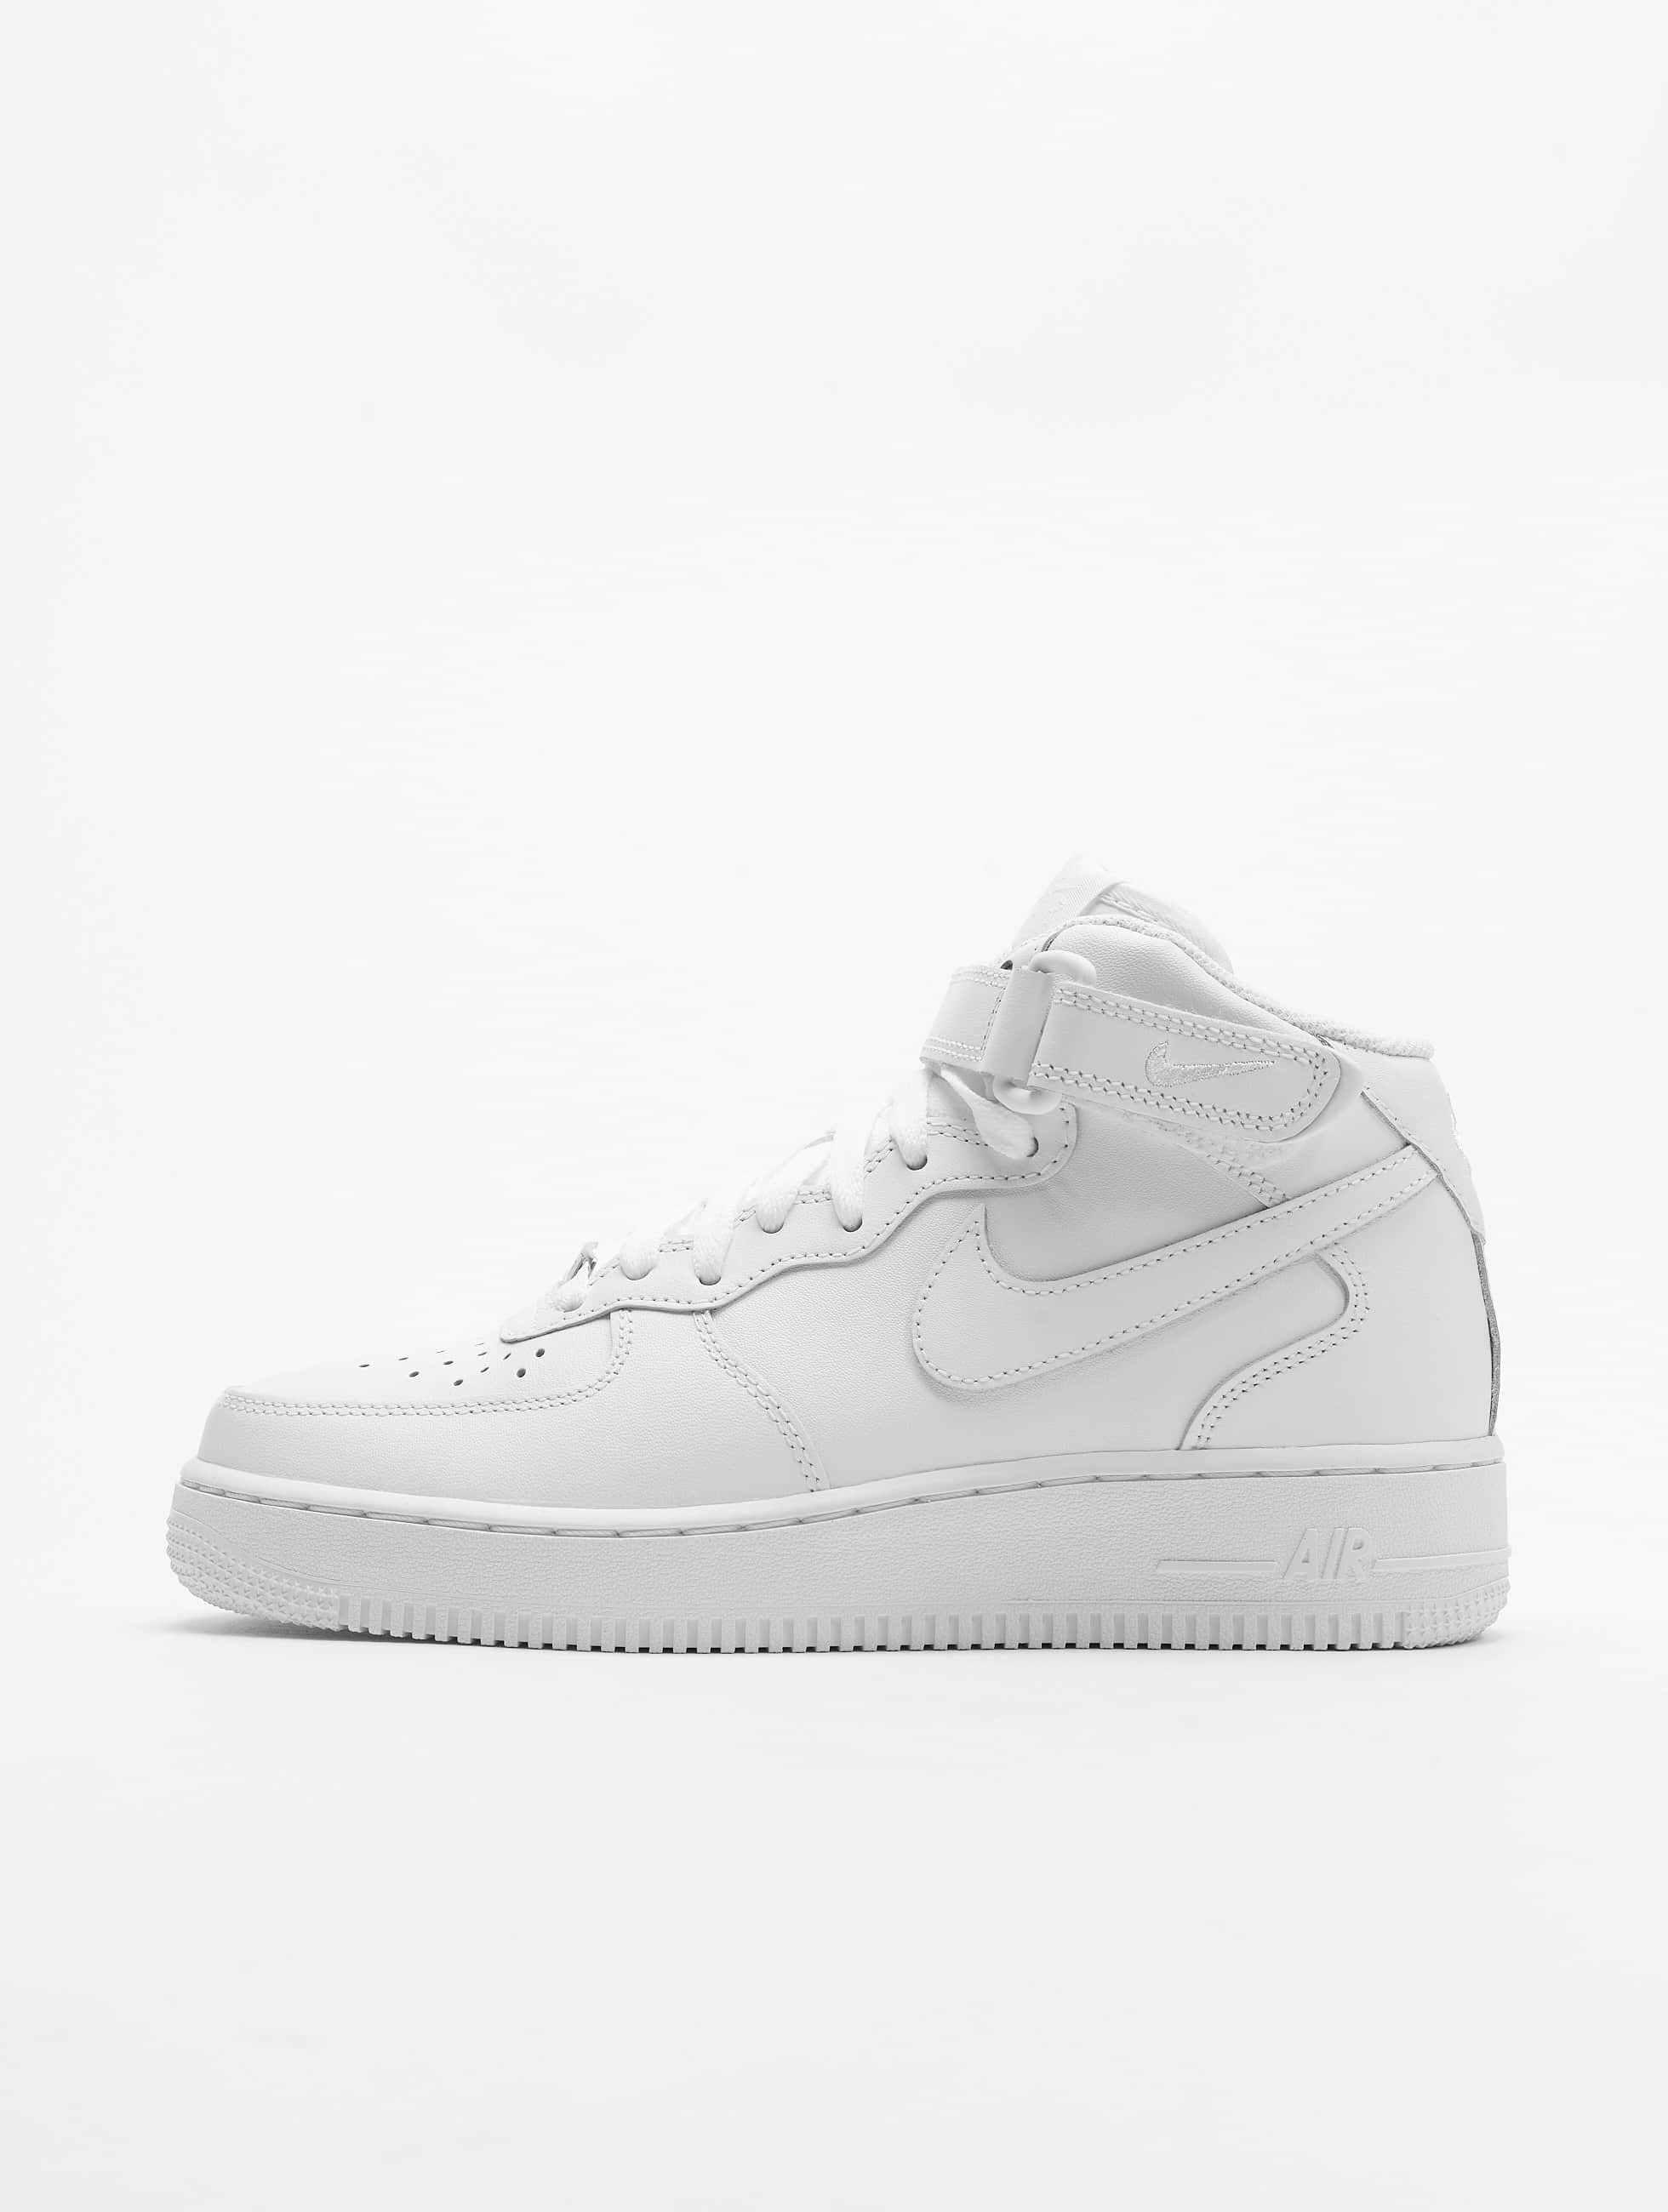 Nike Air Force 1 High bianco